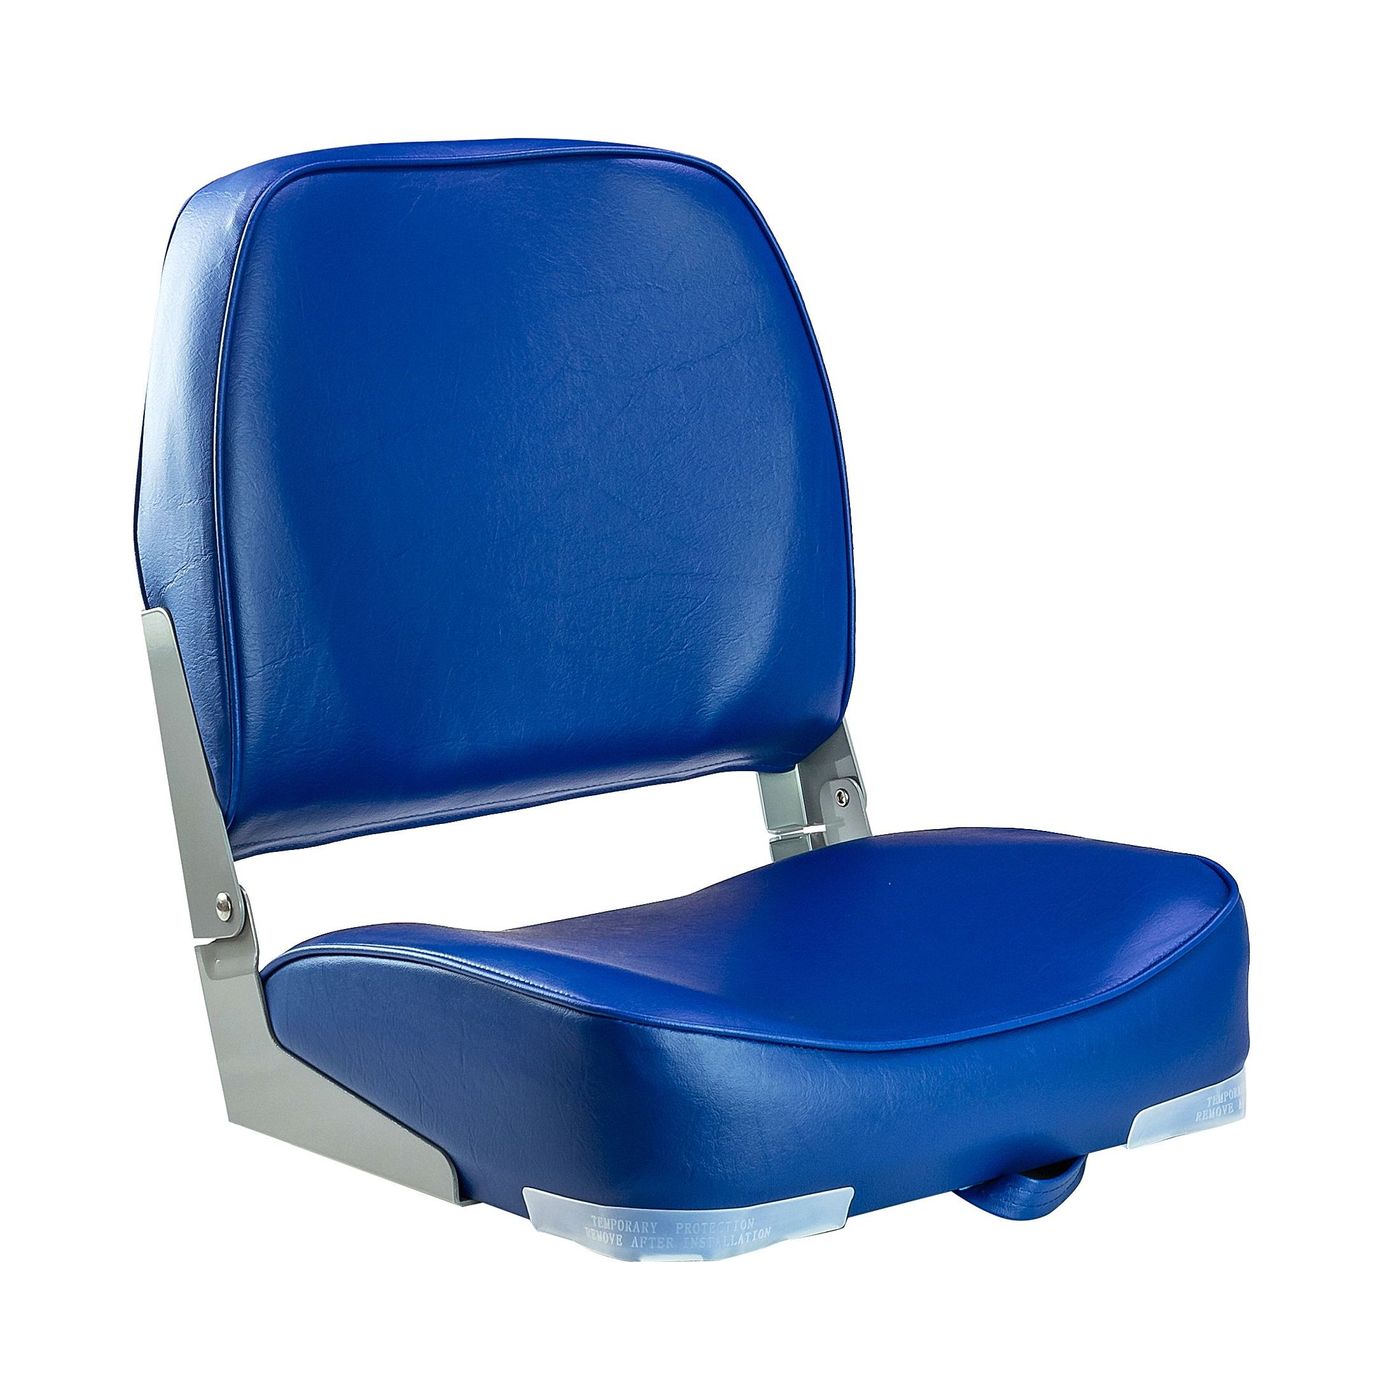 Кресло мягкое складное, обивка винил, цвет синий, Marine Rocket 75103B-MR кресло надувное 121х100х86 см винил с пуфиком 100 кг bestway 75053bw